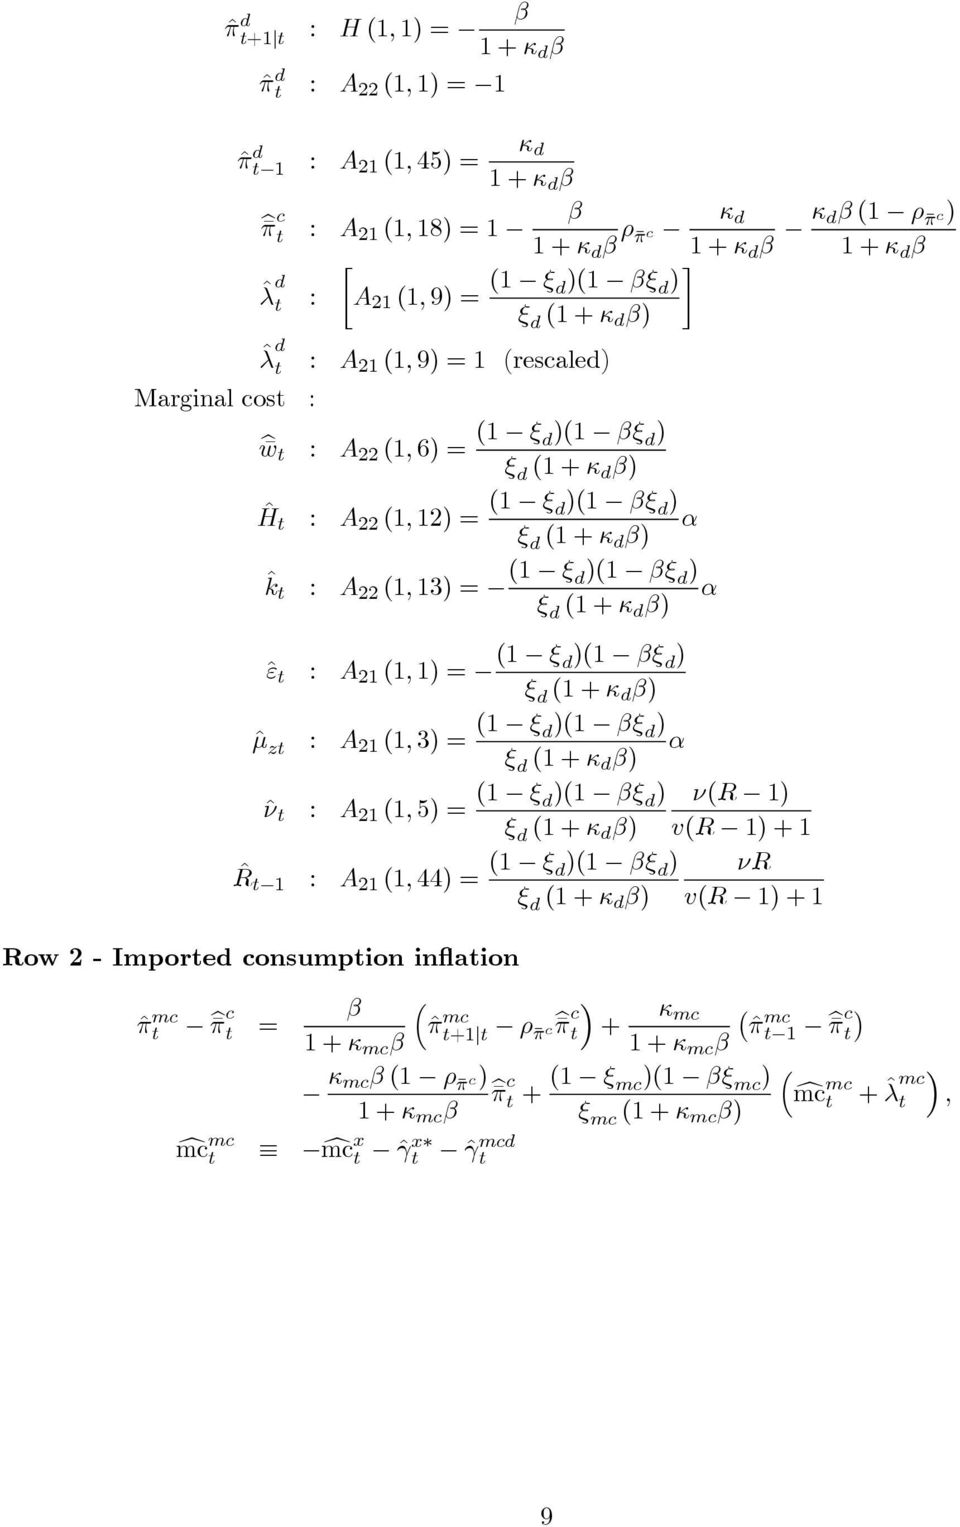 βξ d ) α ξ d (1 + κ d β) ˆε : A 21 (1, 1) = (1 ξ d)(1 βξ d ) ξ d (1 + κ d β) ˆ : A 21 (1, 3) = (1 ξ d)(1 βξ d ) α ξ d (1 + κ d β) ˆν : A 21 (1, 5) = (1 ξ d)(1 βξ d ) ν(r 1) ξ d (1 + κ d β) v(r 1) + 1